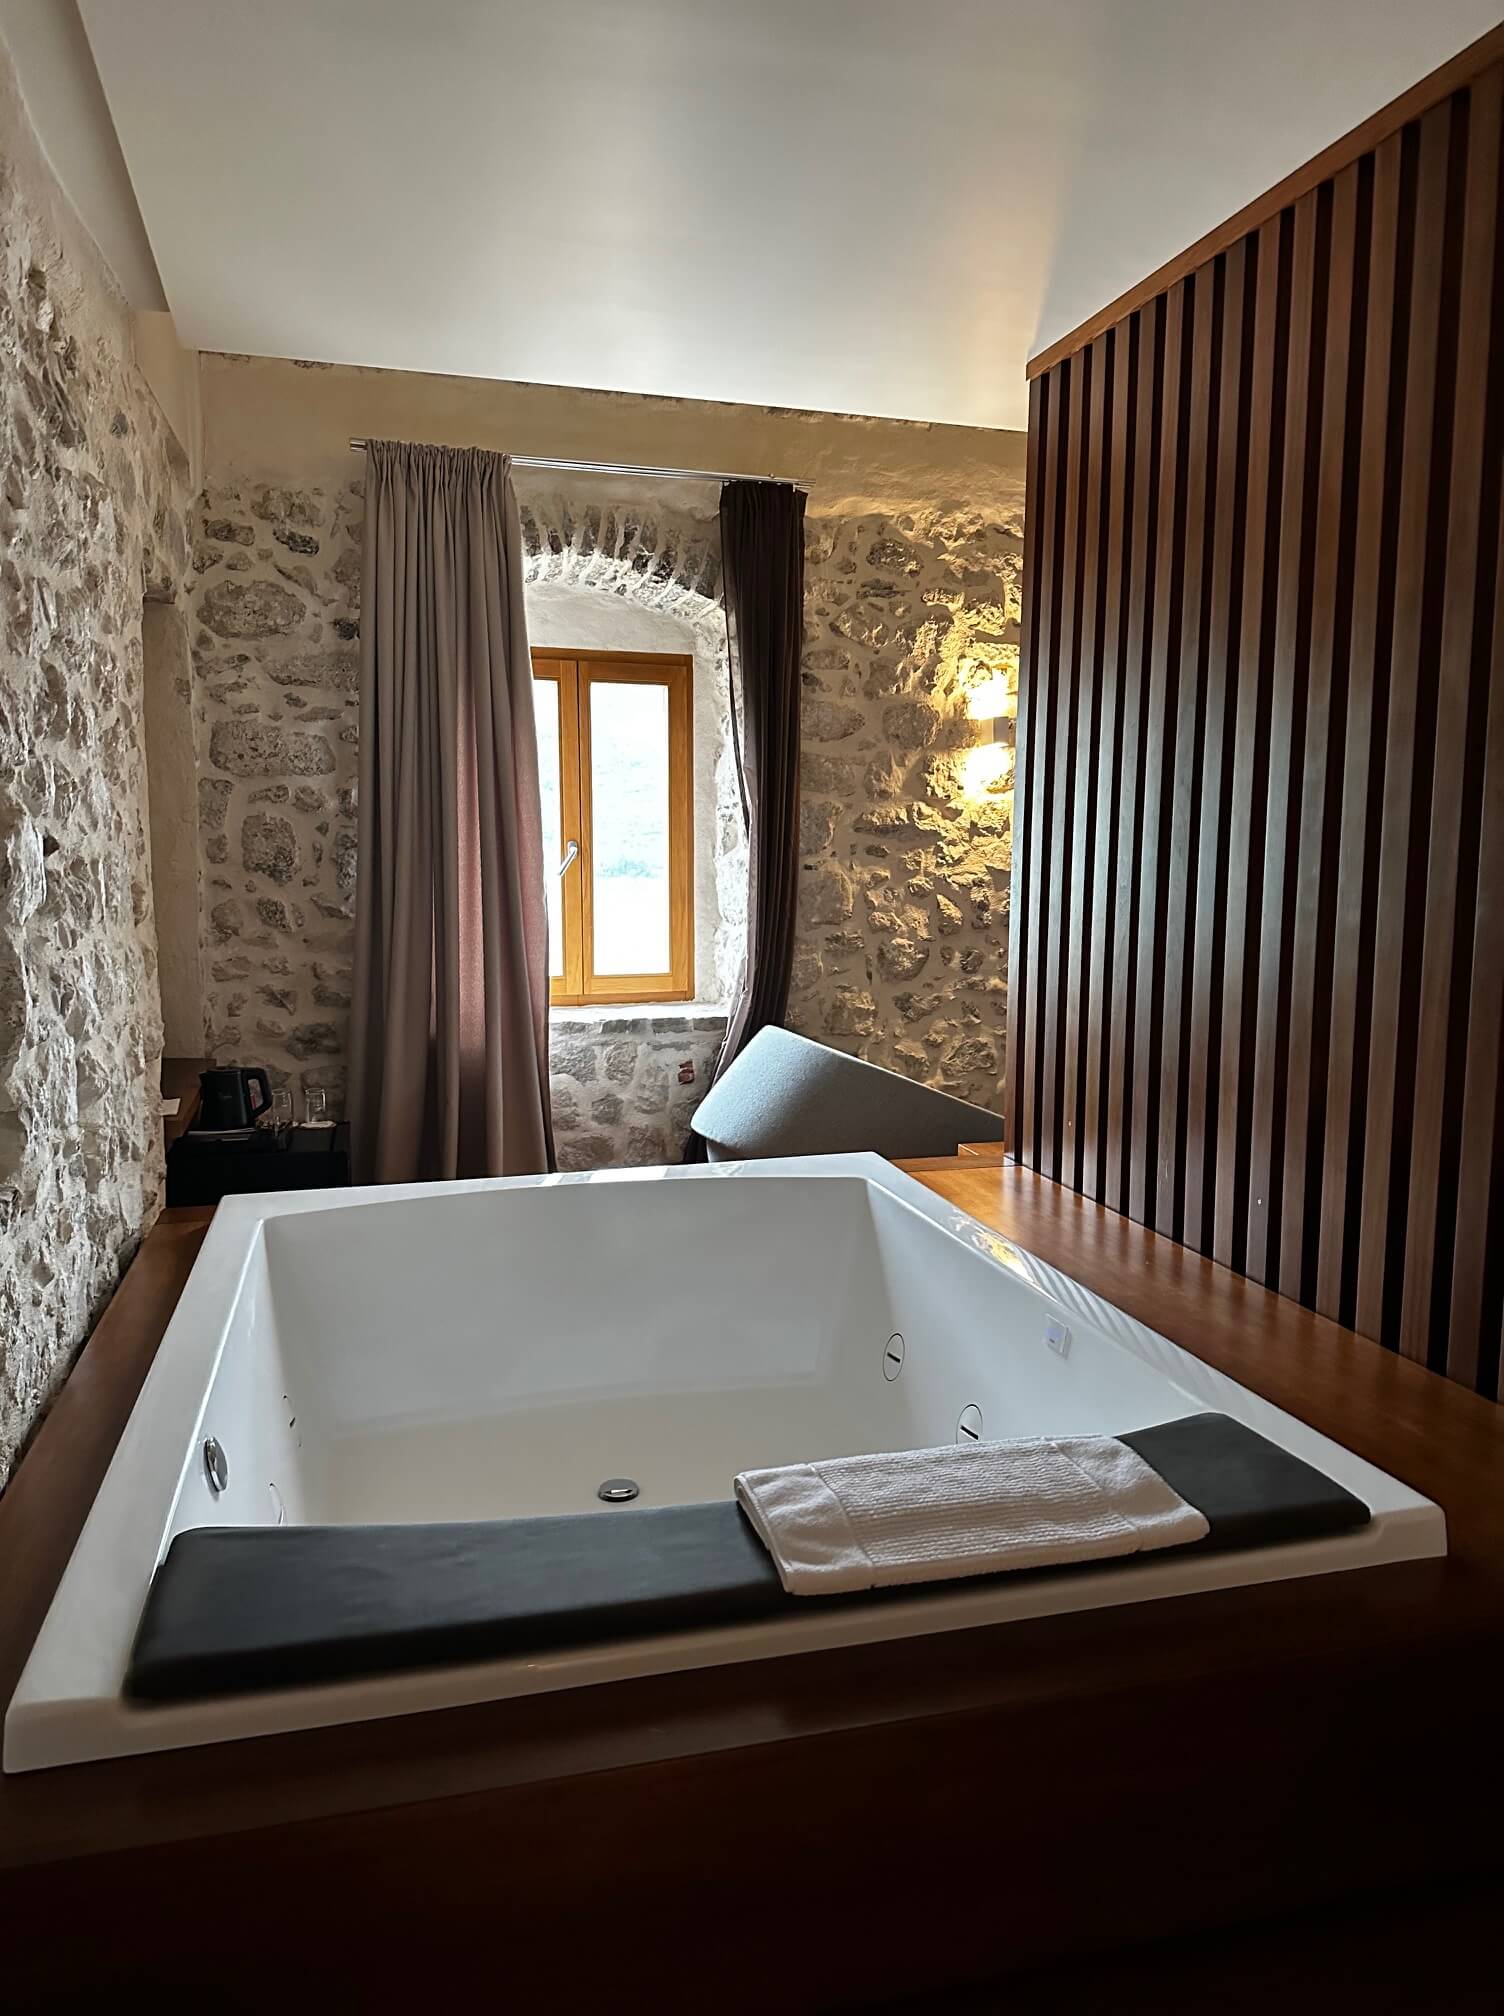 Ein ruhiges Badezimmer in einem Luxusresort mit einer großen, rechteckigen Whirlpoolwanne, umgeben von rustikalen Steinmauern. Eine Trennwand aus Holzlatten trennt den Wannenbereich vom Rest des Raums, und ein kleines Fenster sorgt für Tageslicht.